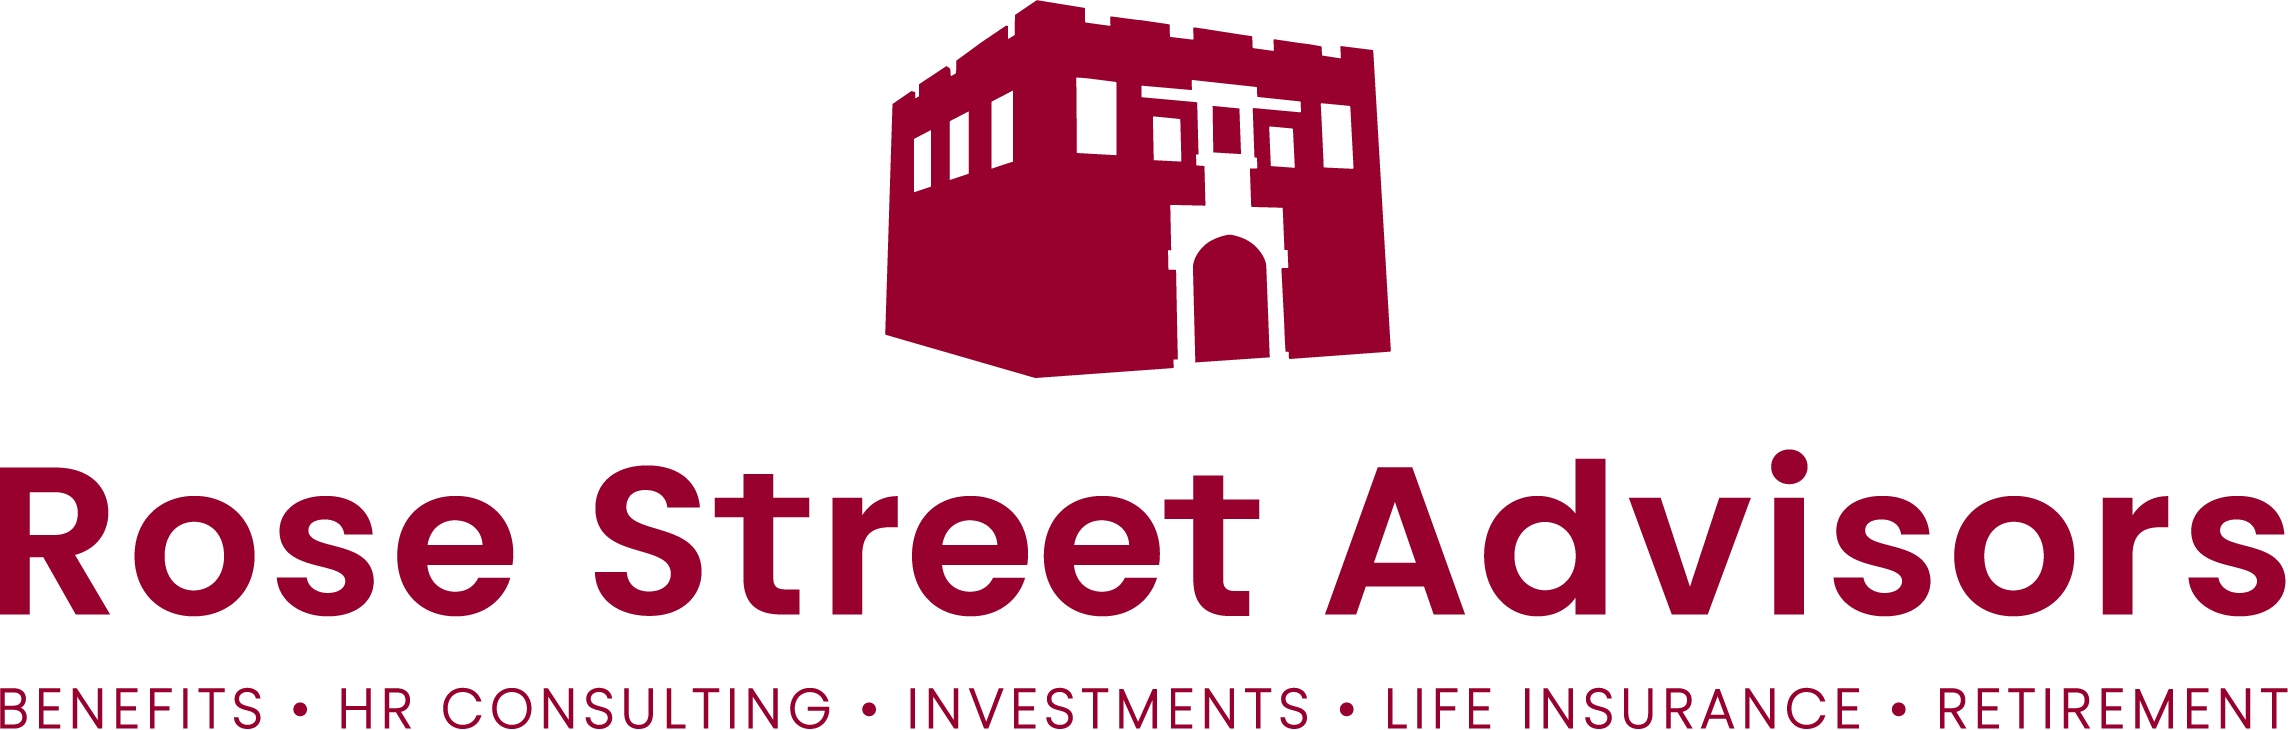 Rose Street Advisors Logo